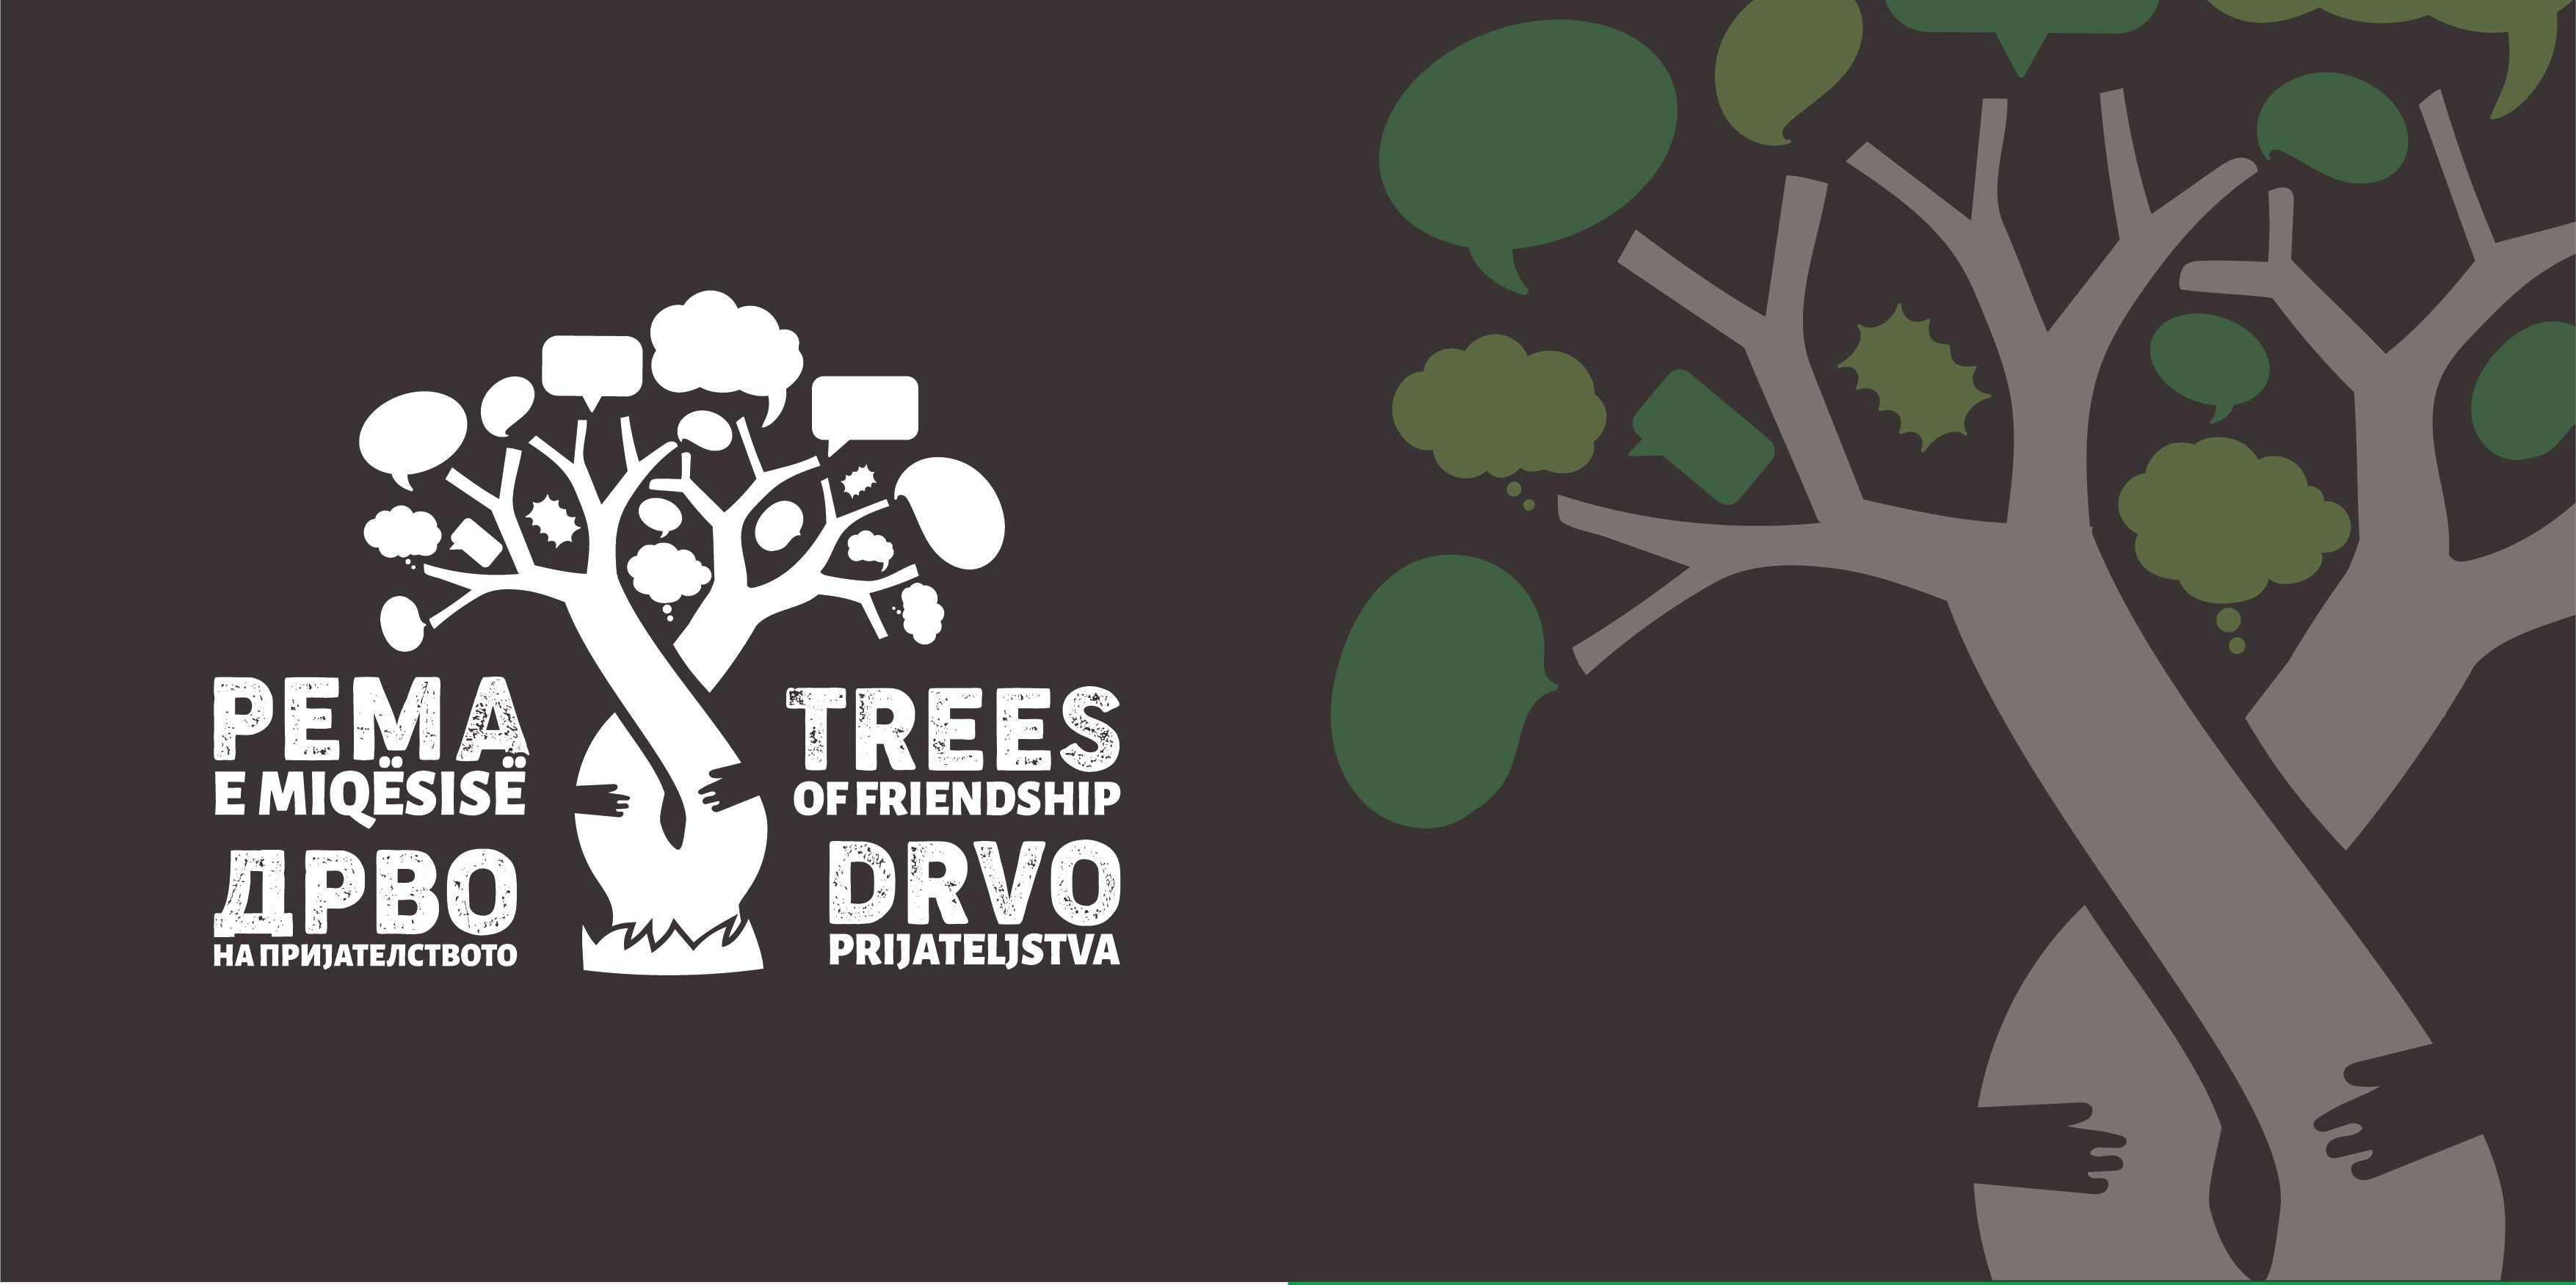 I Crna Gora dio regionalne akcije ,,Drvo prijateljstva”:  NOVI DRVORED U PODGORICI